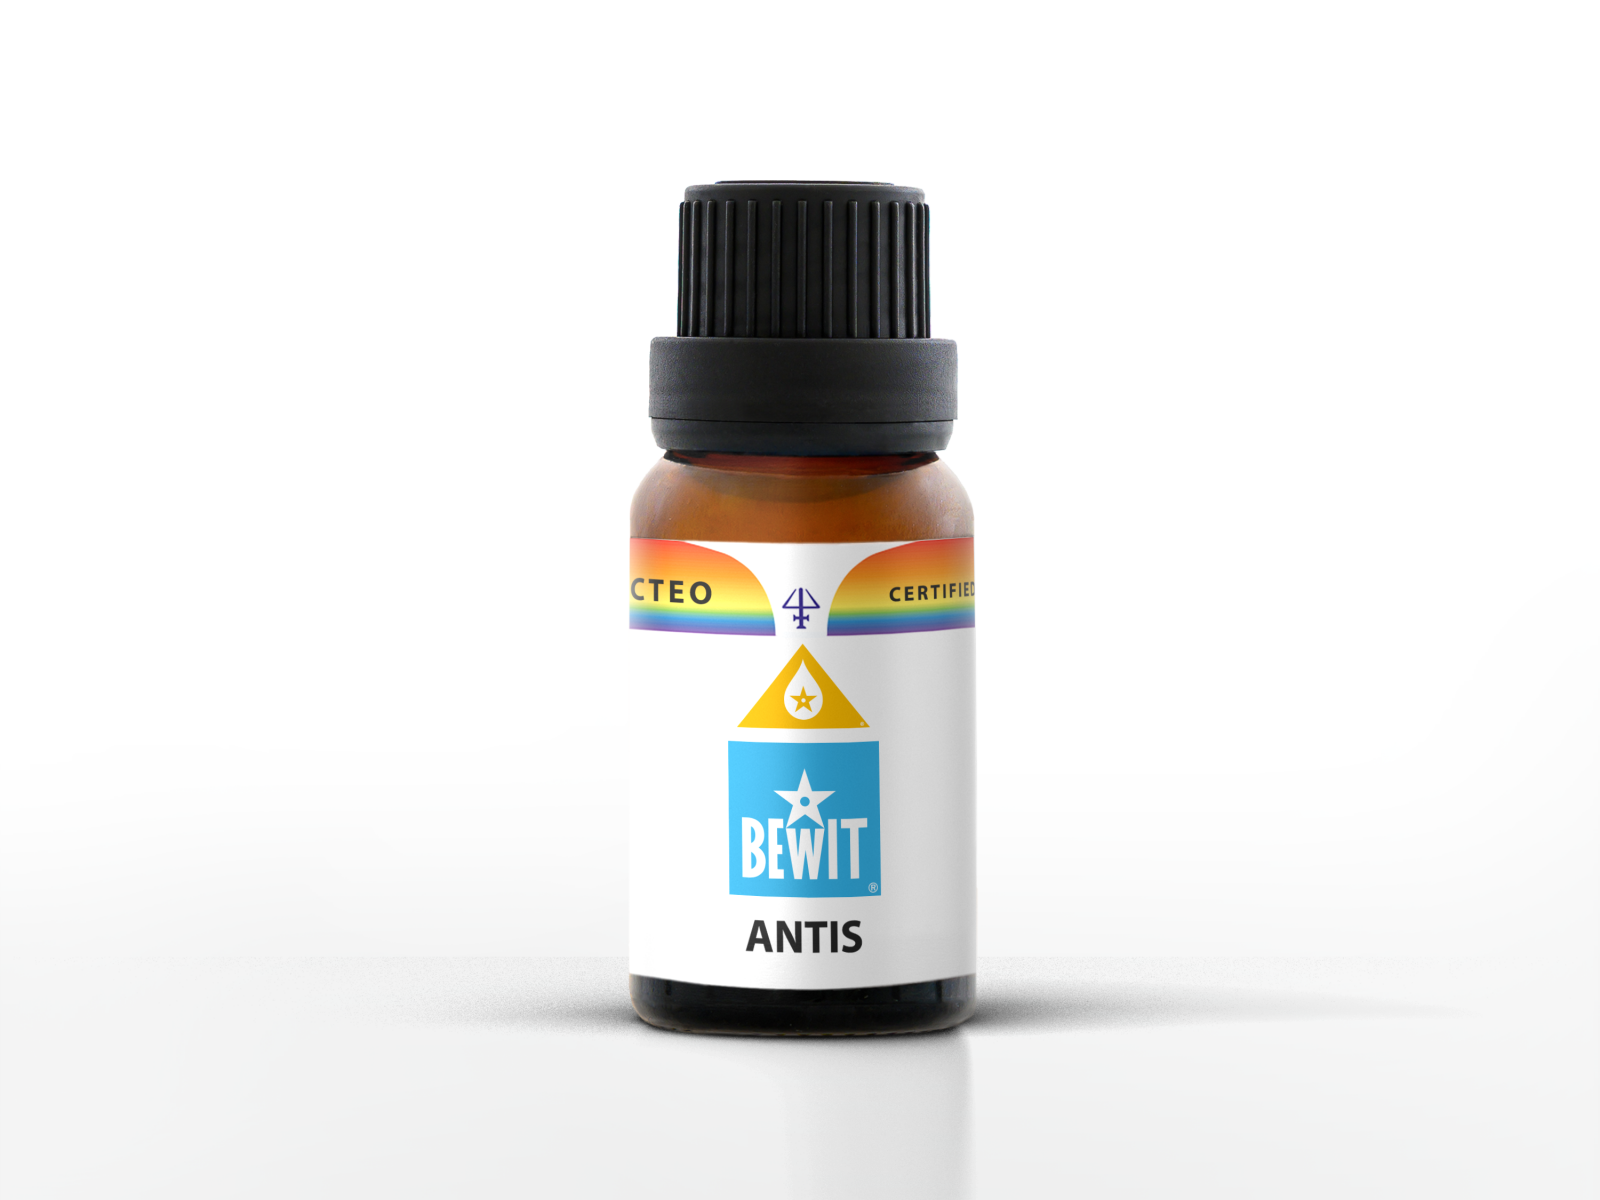 BEWIT ANTIS - 100% čistá a přírodní směs CTEO® esenciálních olejů